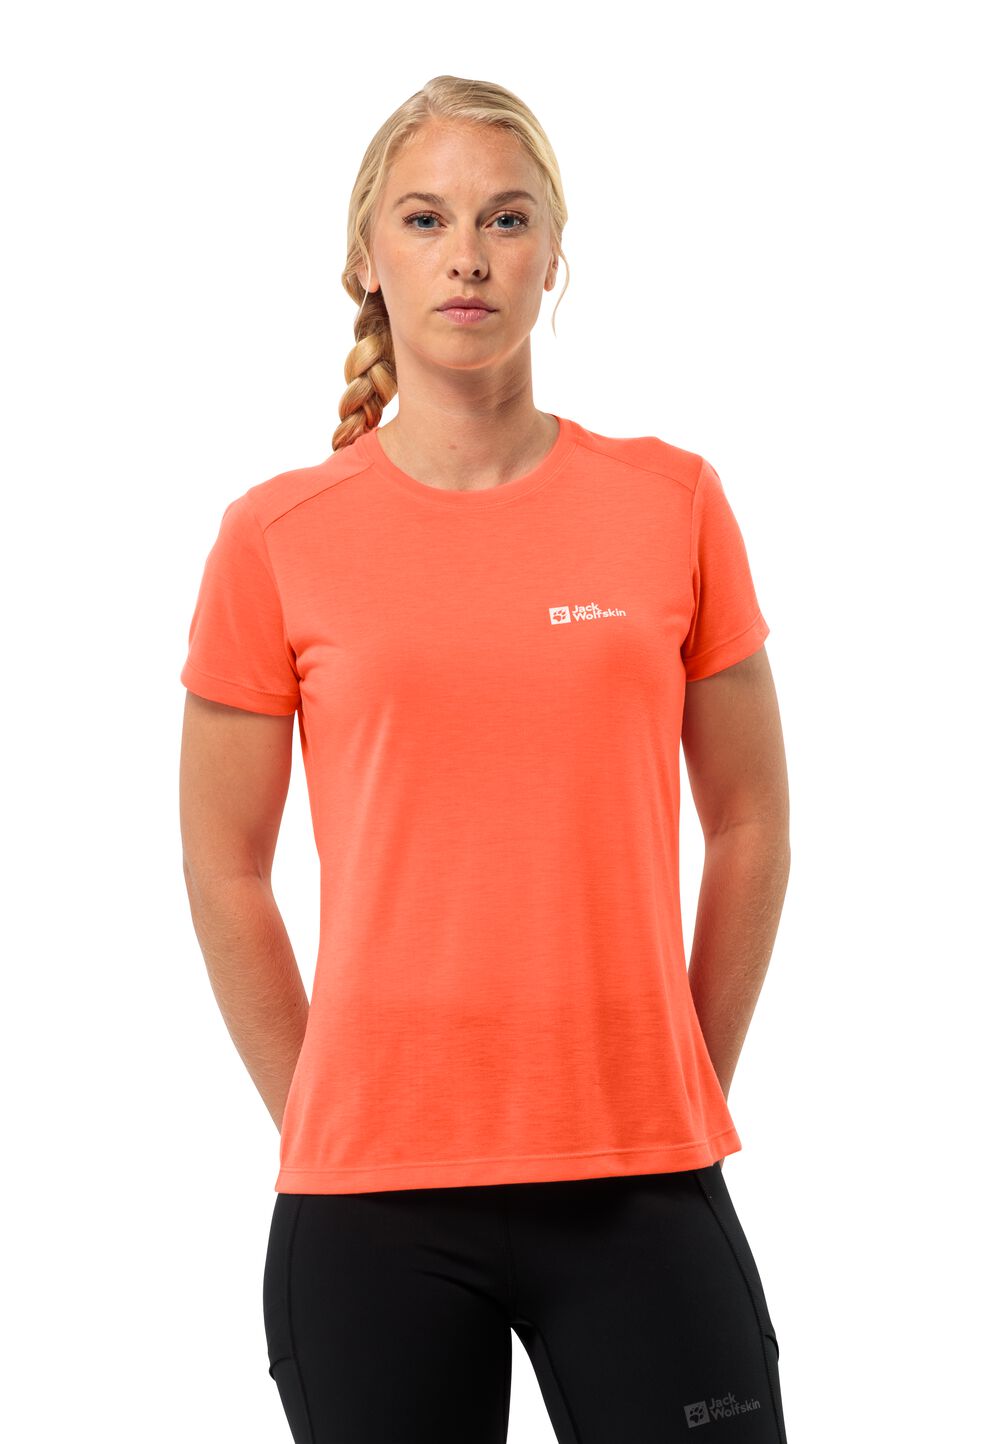 Jack Wolfskin Vonnan S S T-Shirt Women Functioneel shirt Dames XL rood digital orange